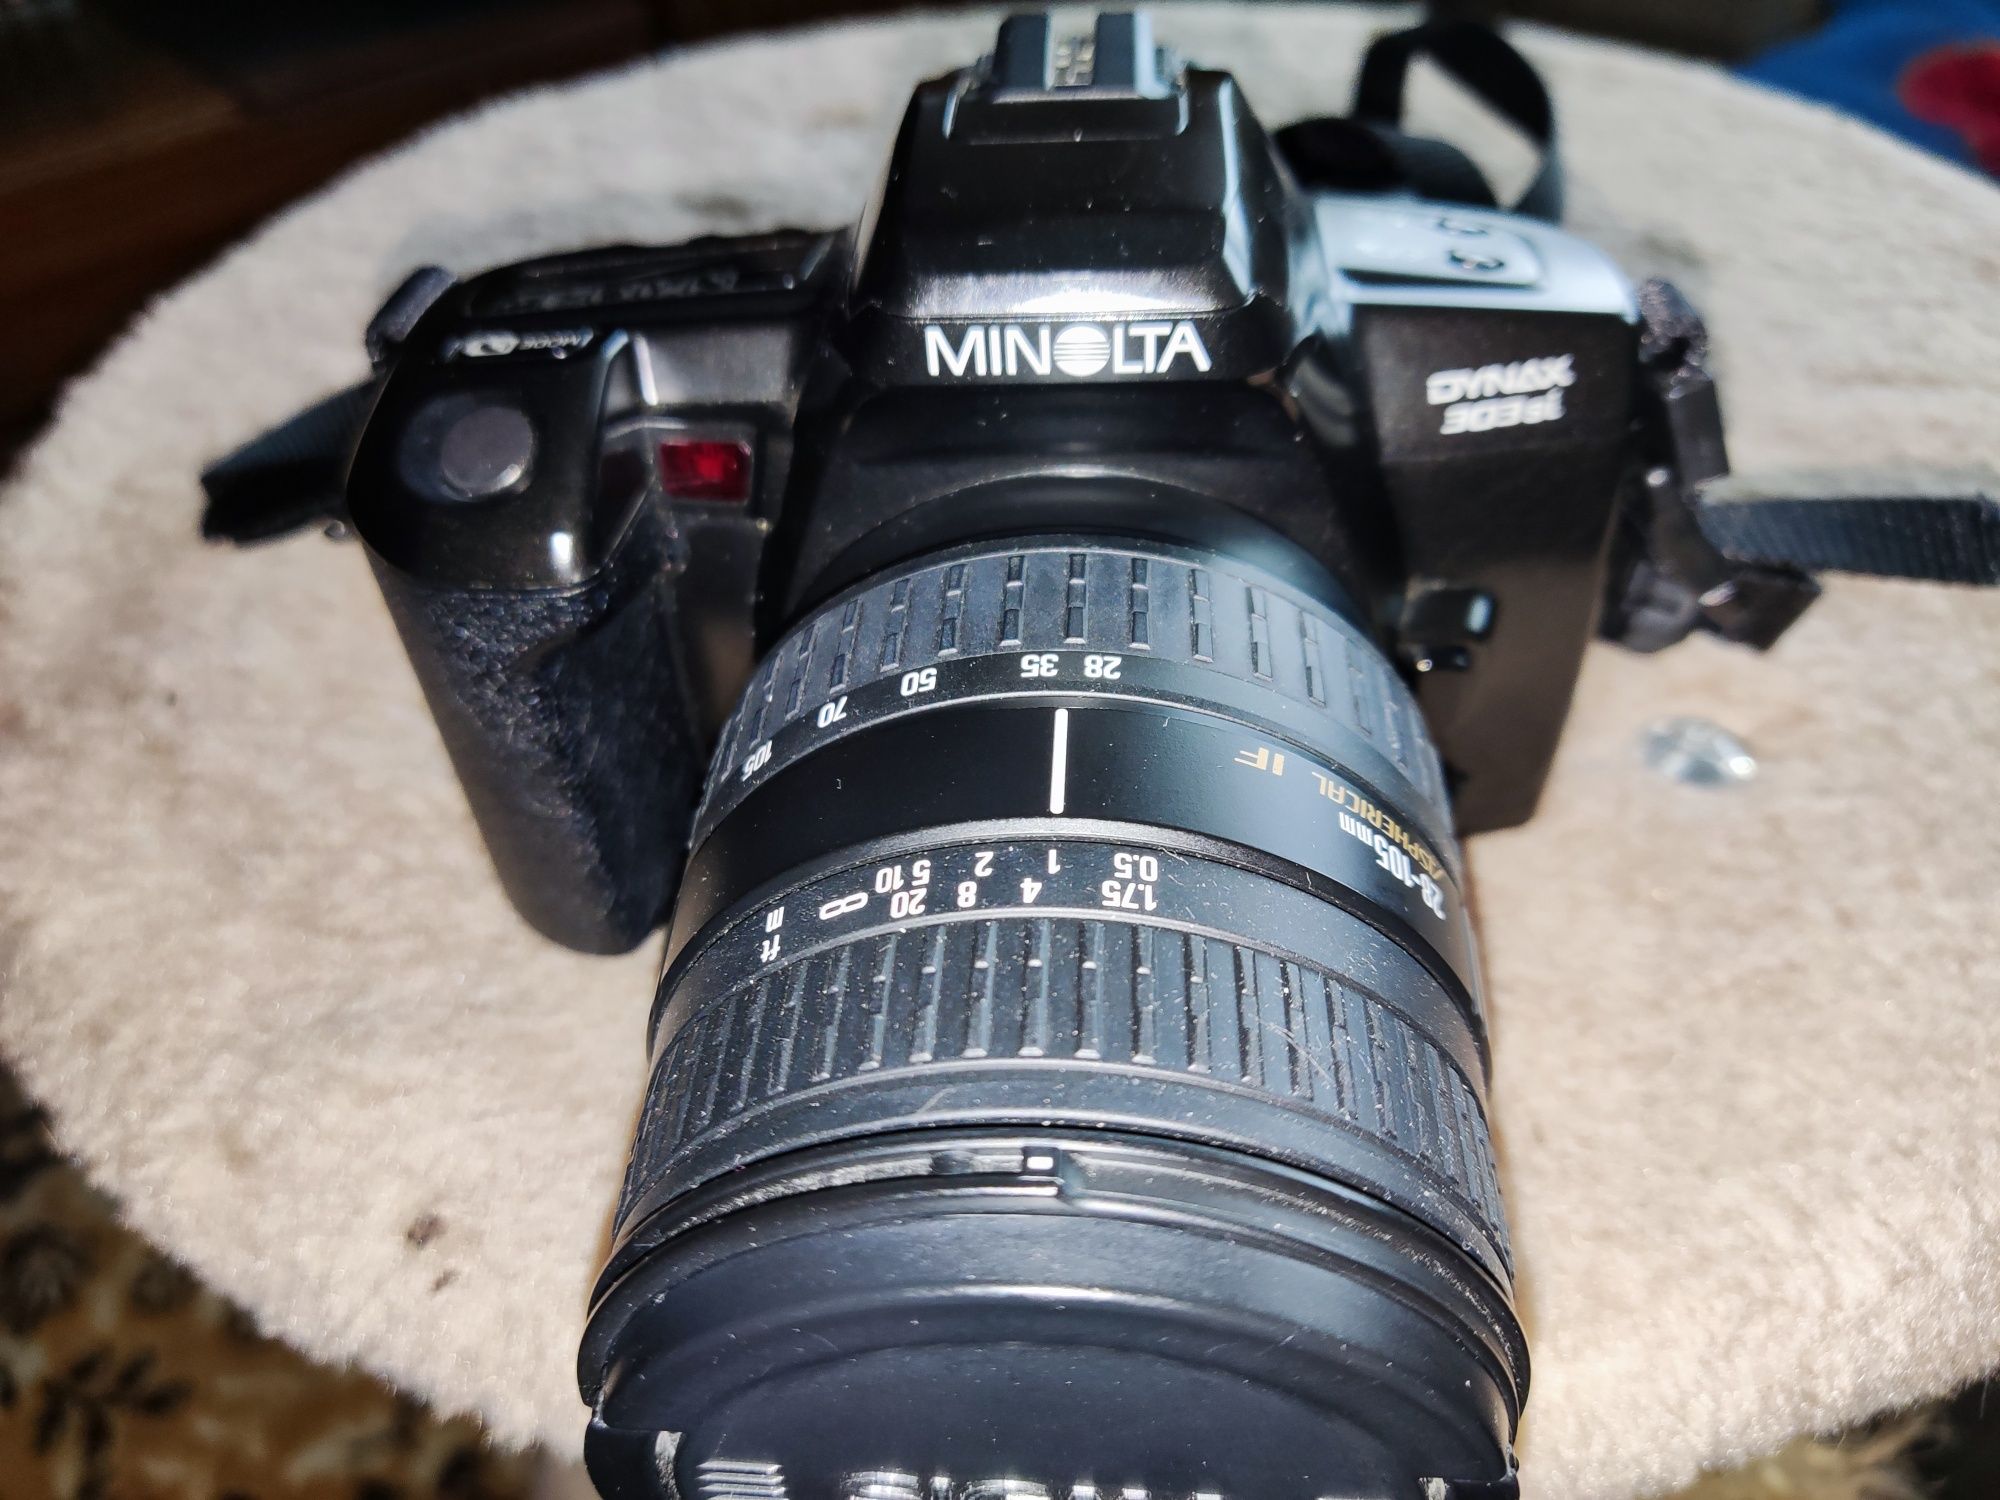 Продам плёночный фотоаппарат Minolta dynax 303 si